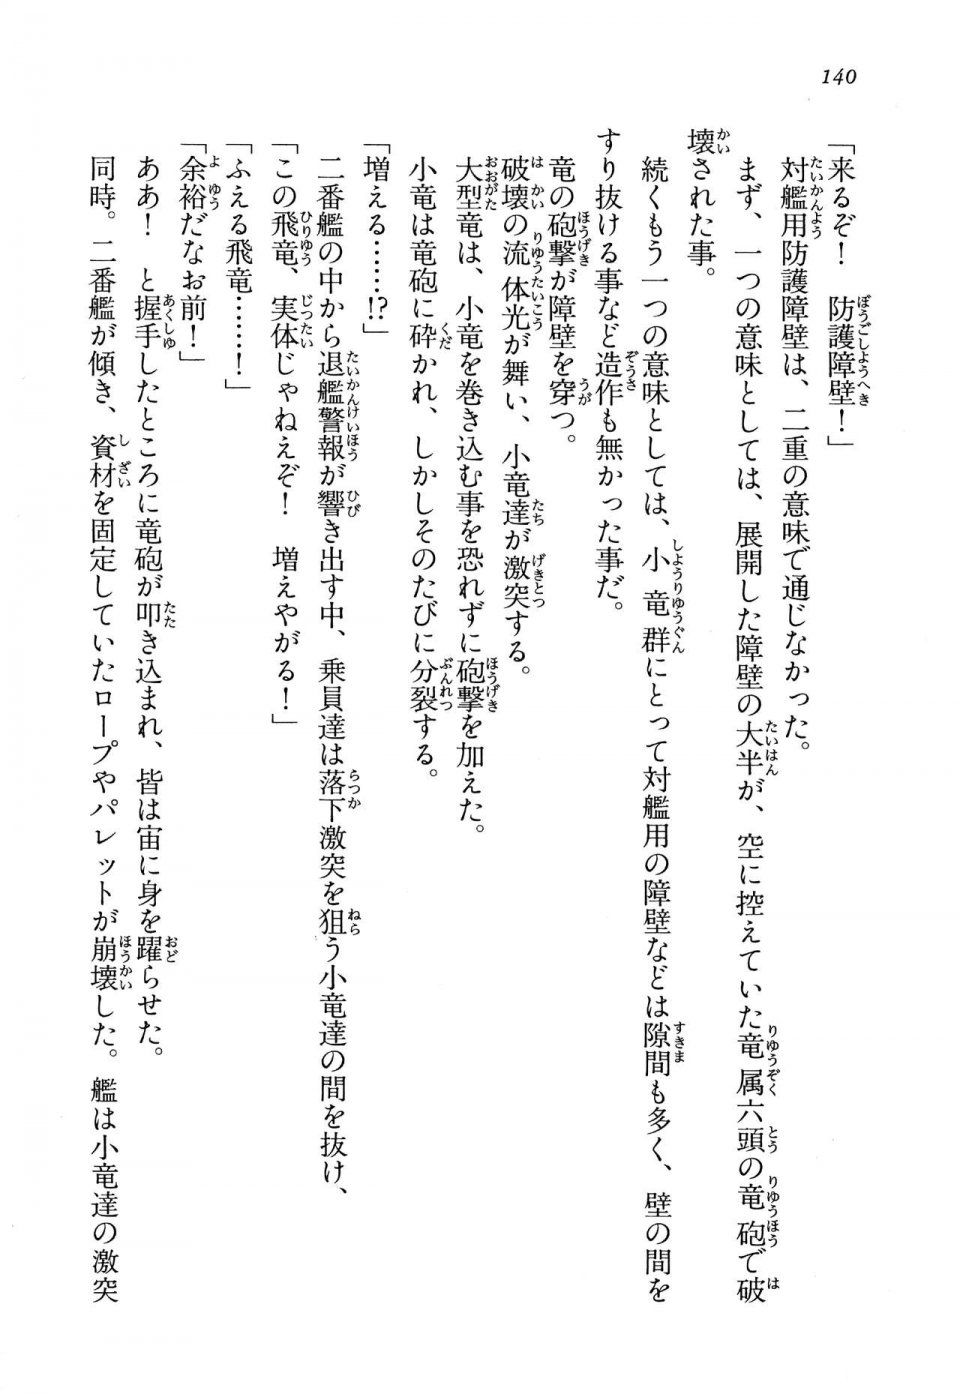 Kyoukai Senjou no Horizon LN Vol 13(6A) - Photo #140